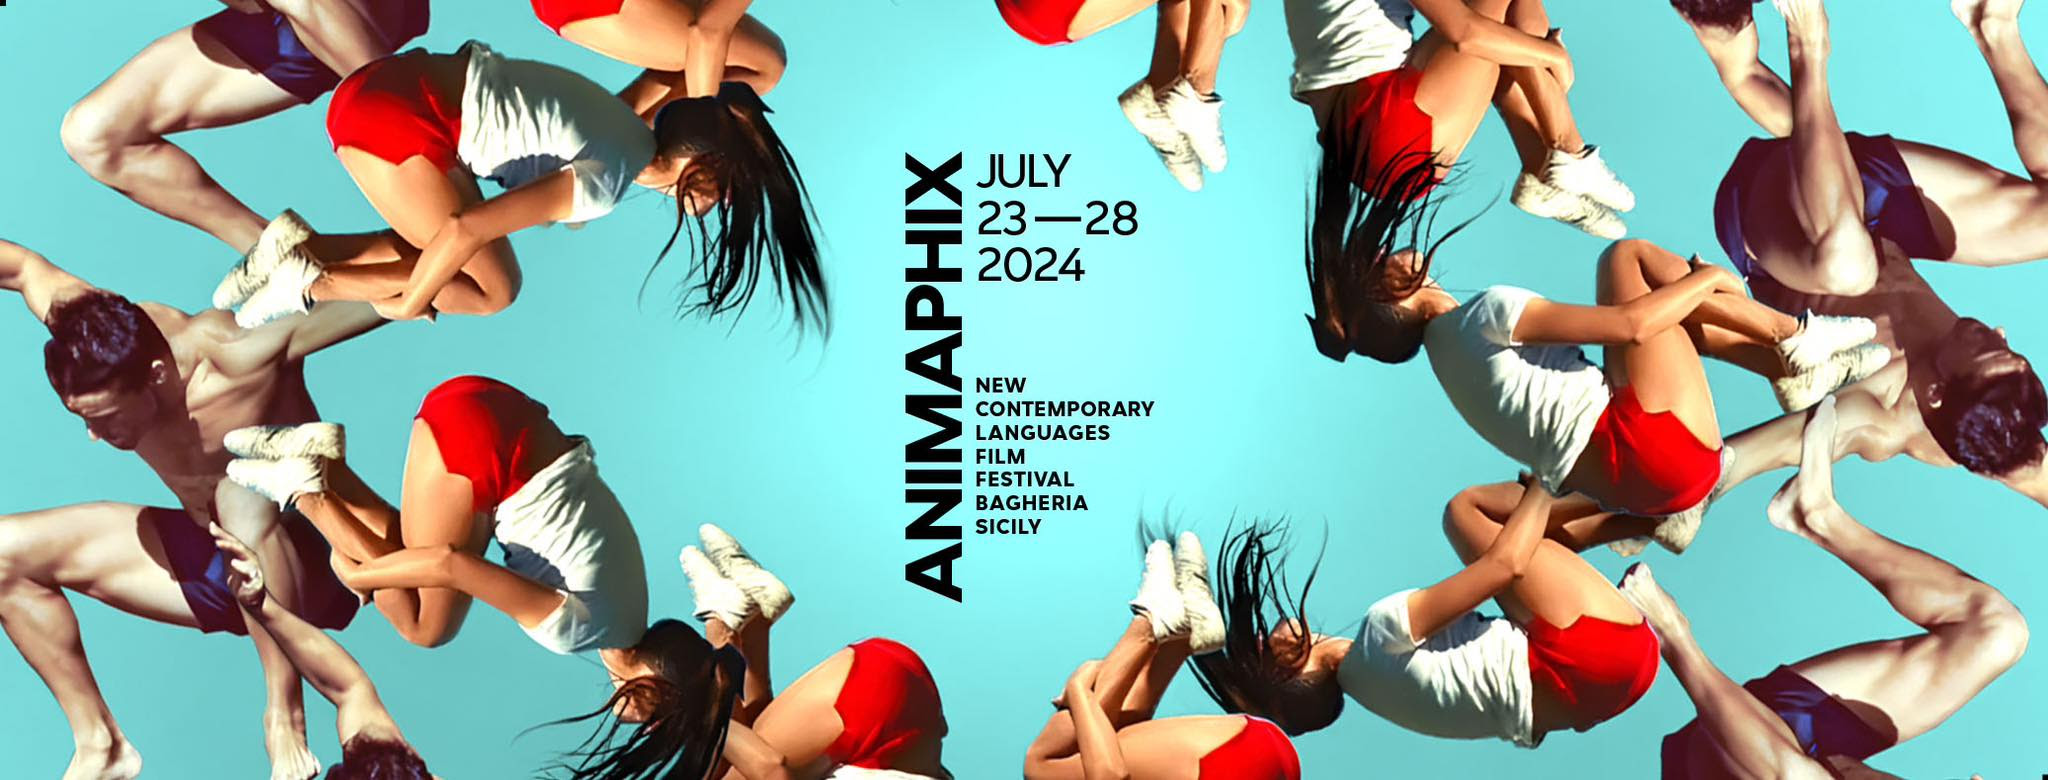 Anmaphix film festival: il programma di oggi e domani